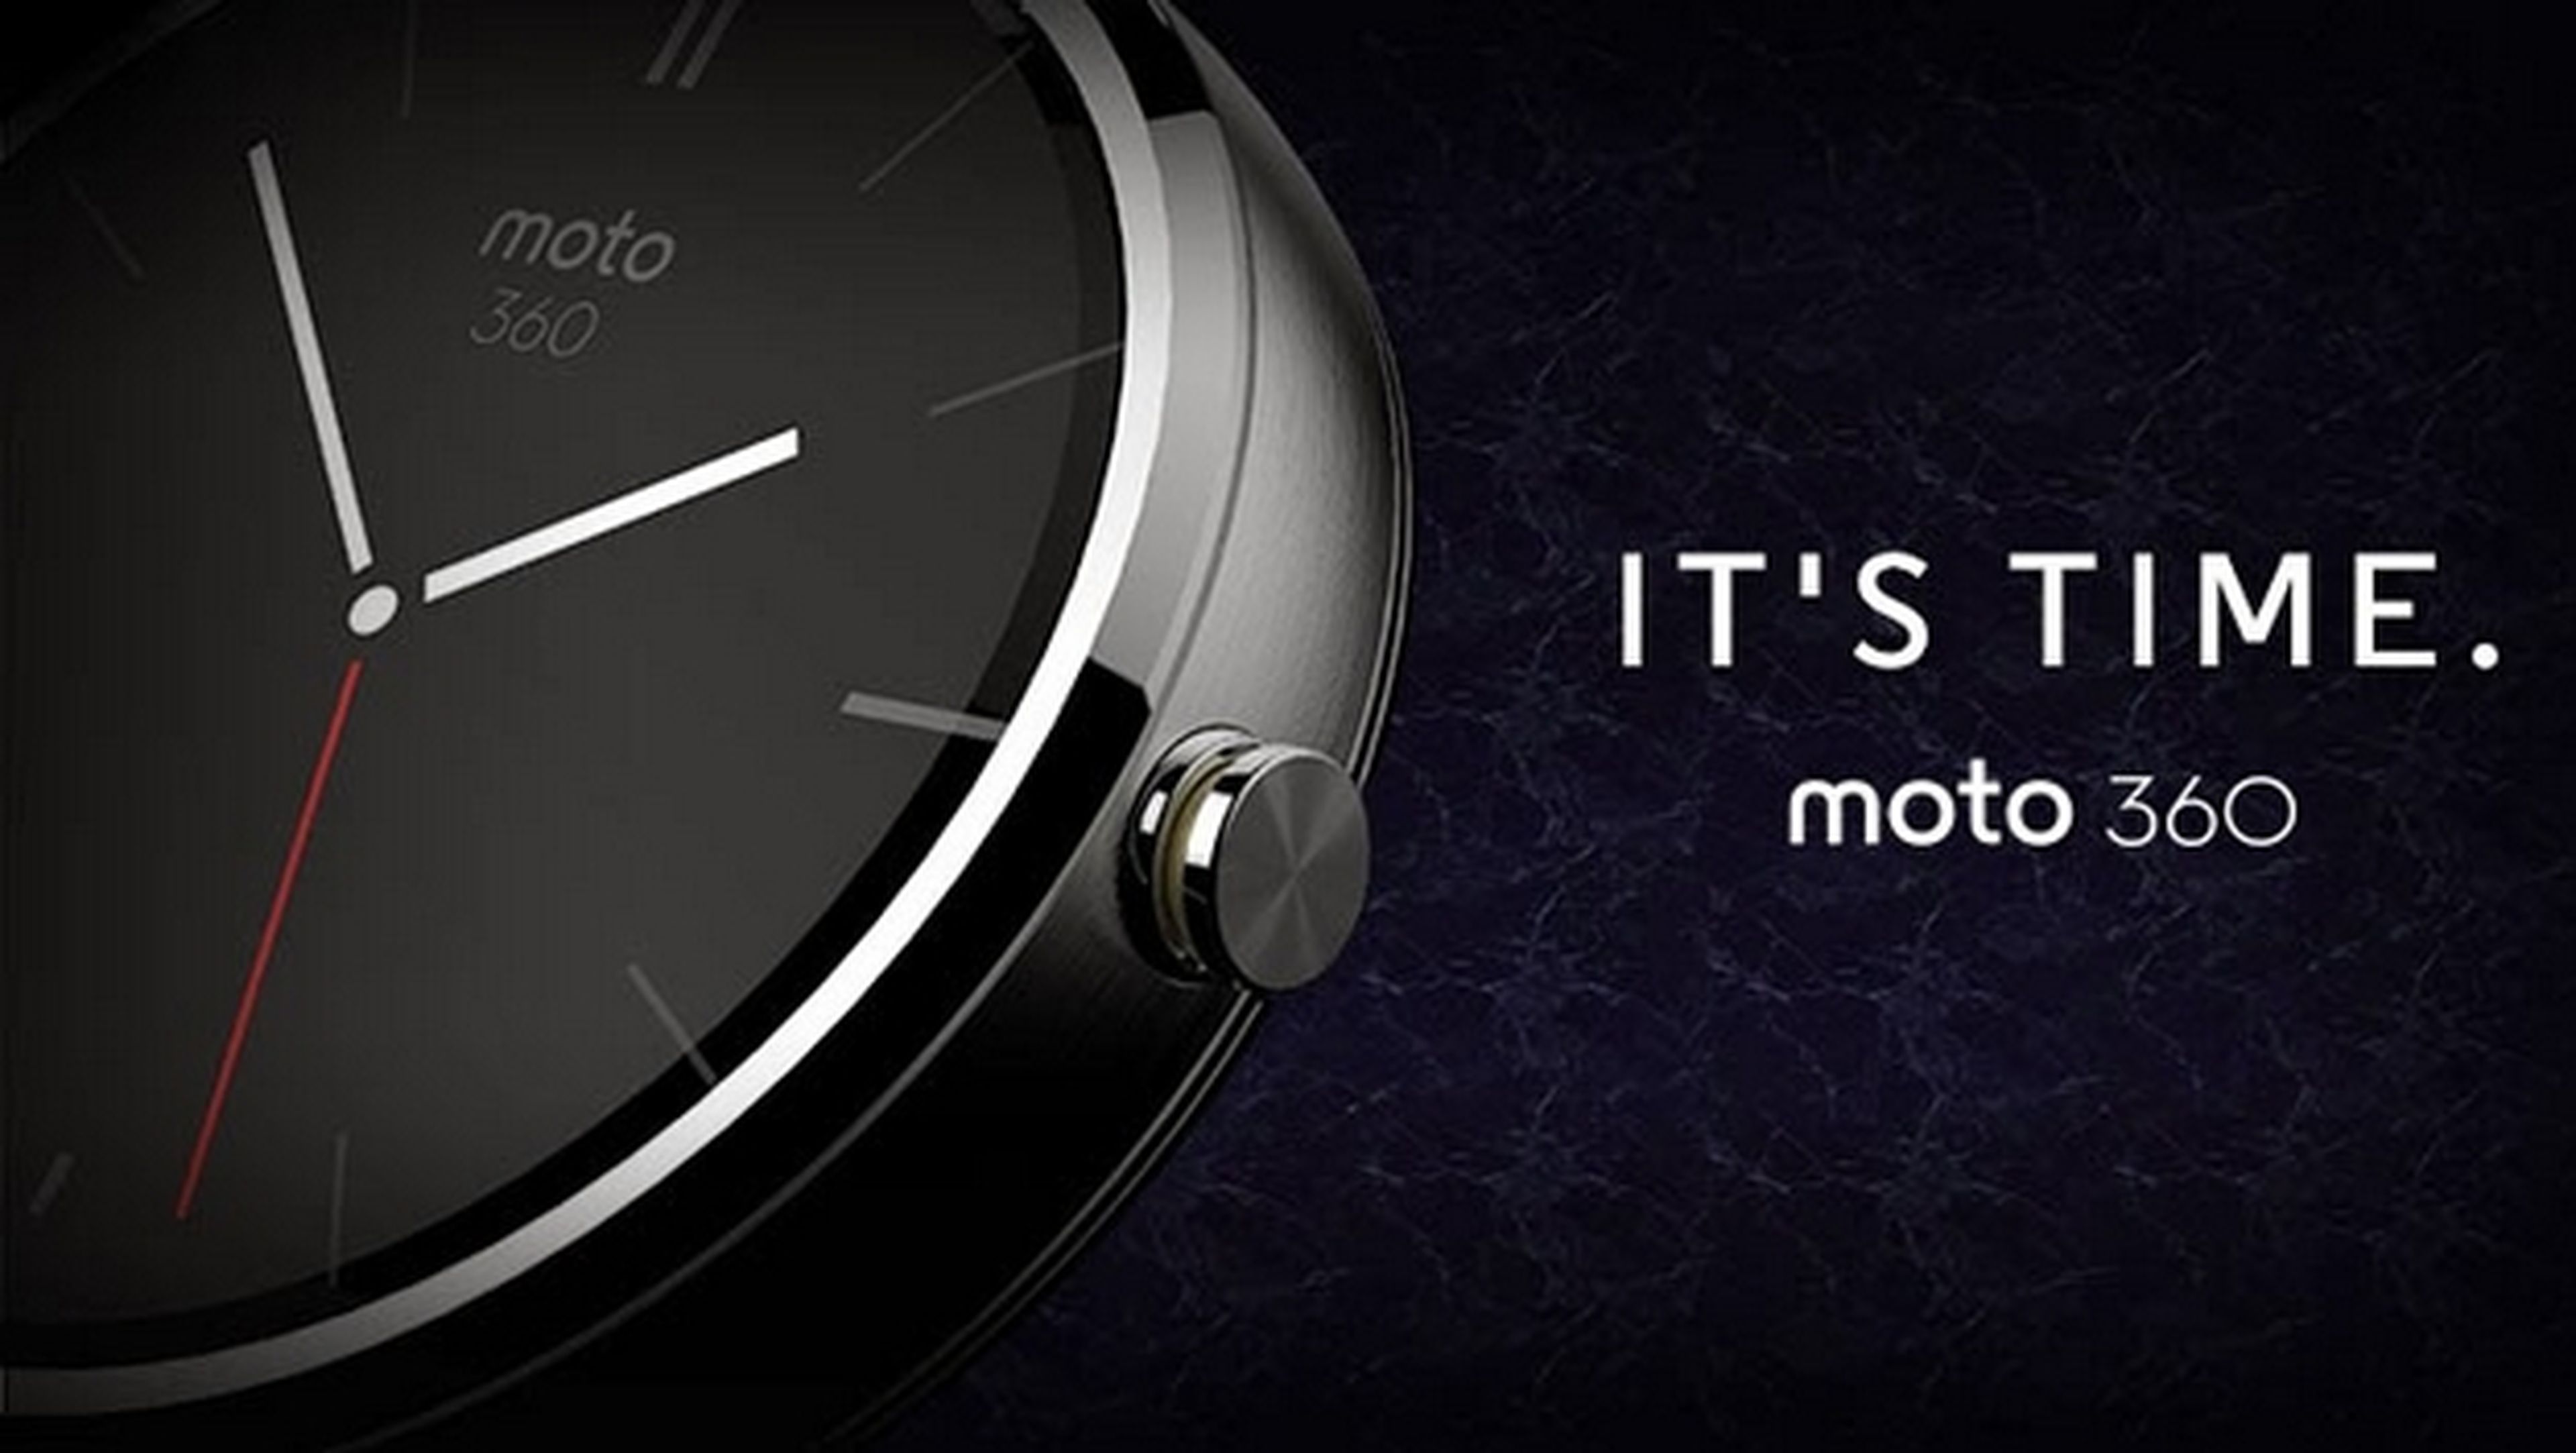 Smartwatch Moto 360, espectaculares fotos y nuevos datos del reloj inteligente de Motorola, con correas intercambiables y pantalla de zafiro.